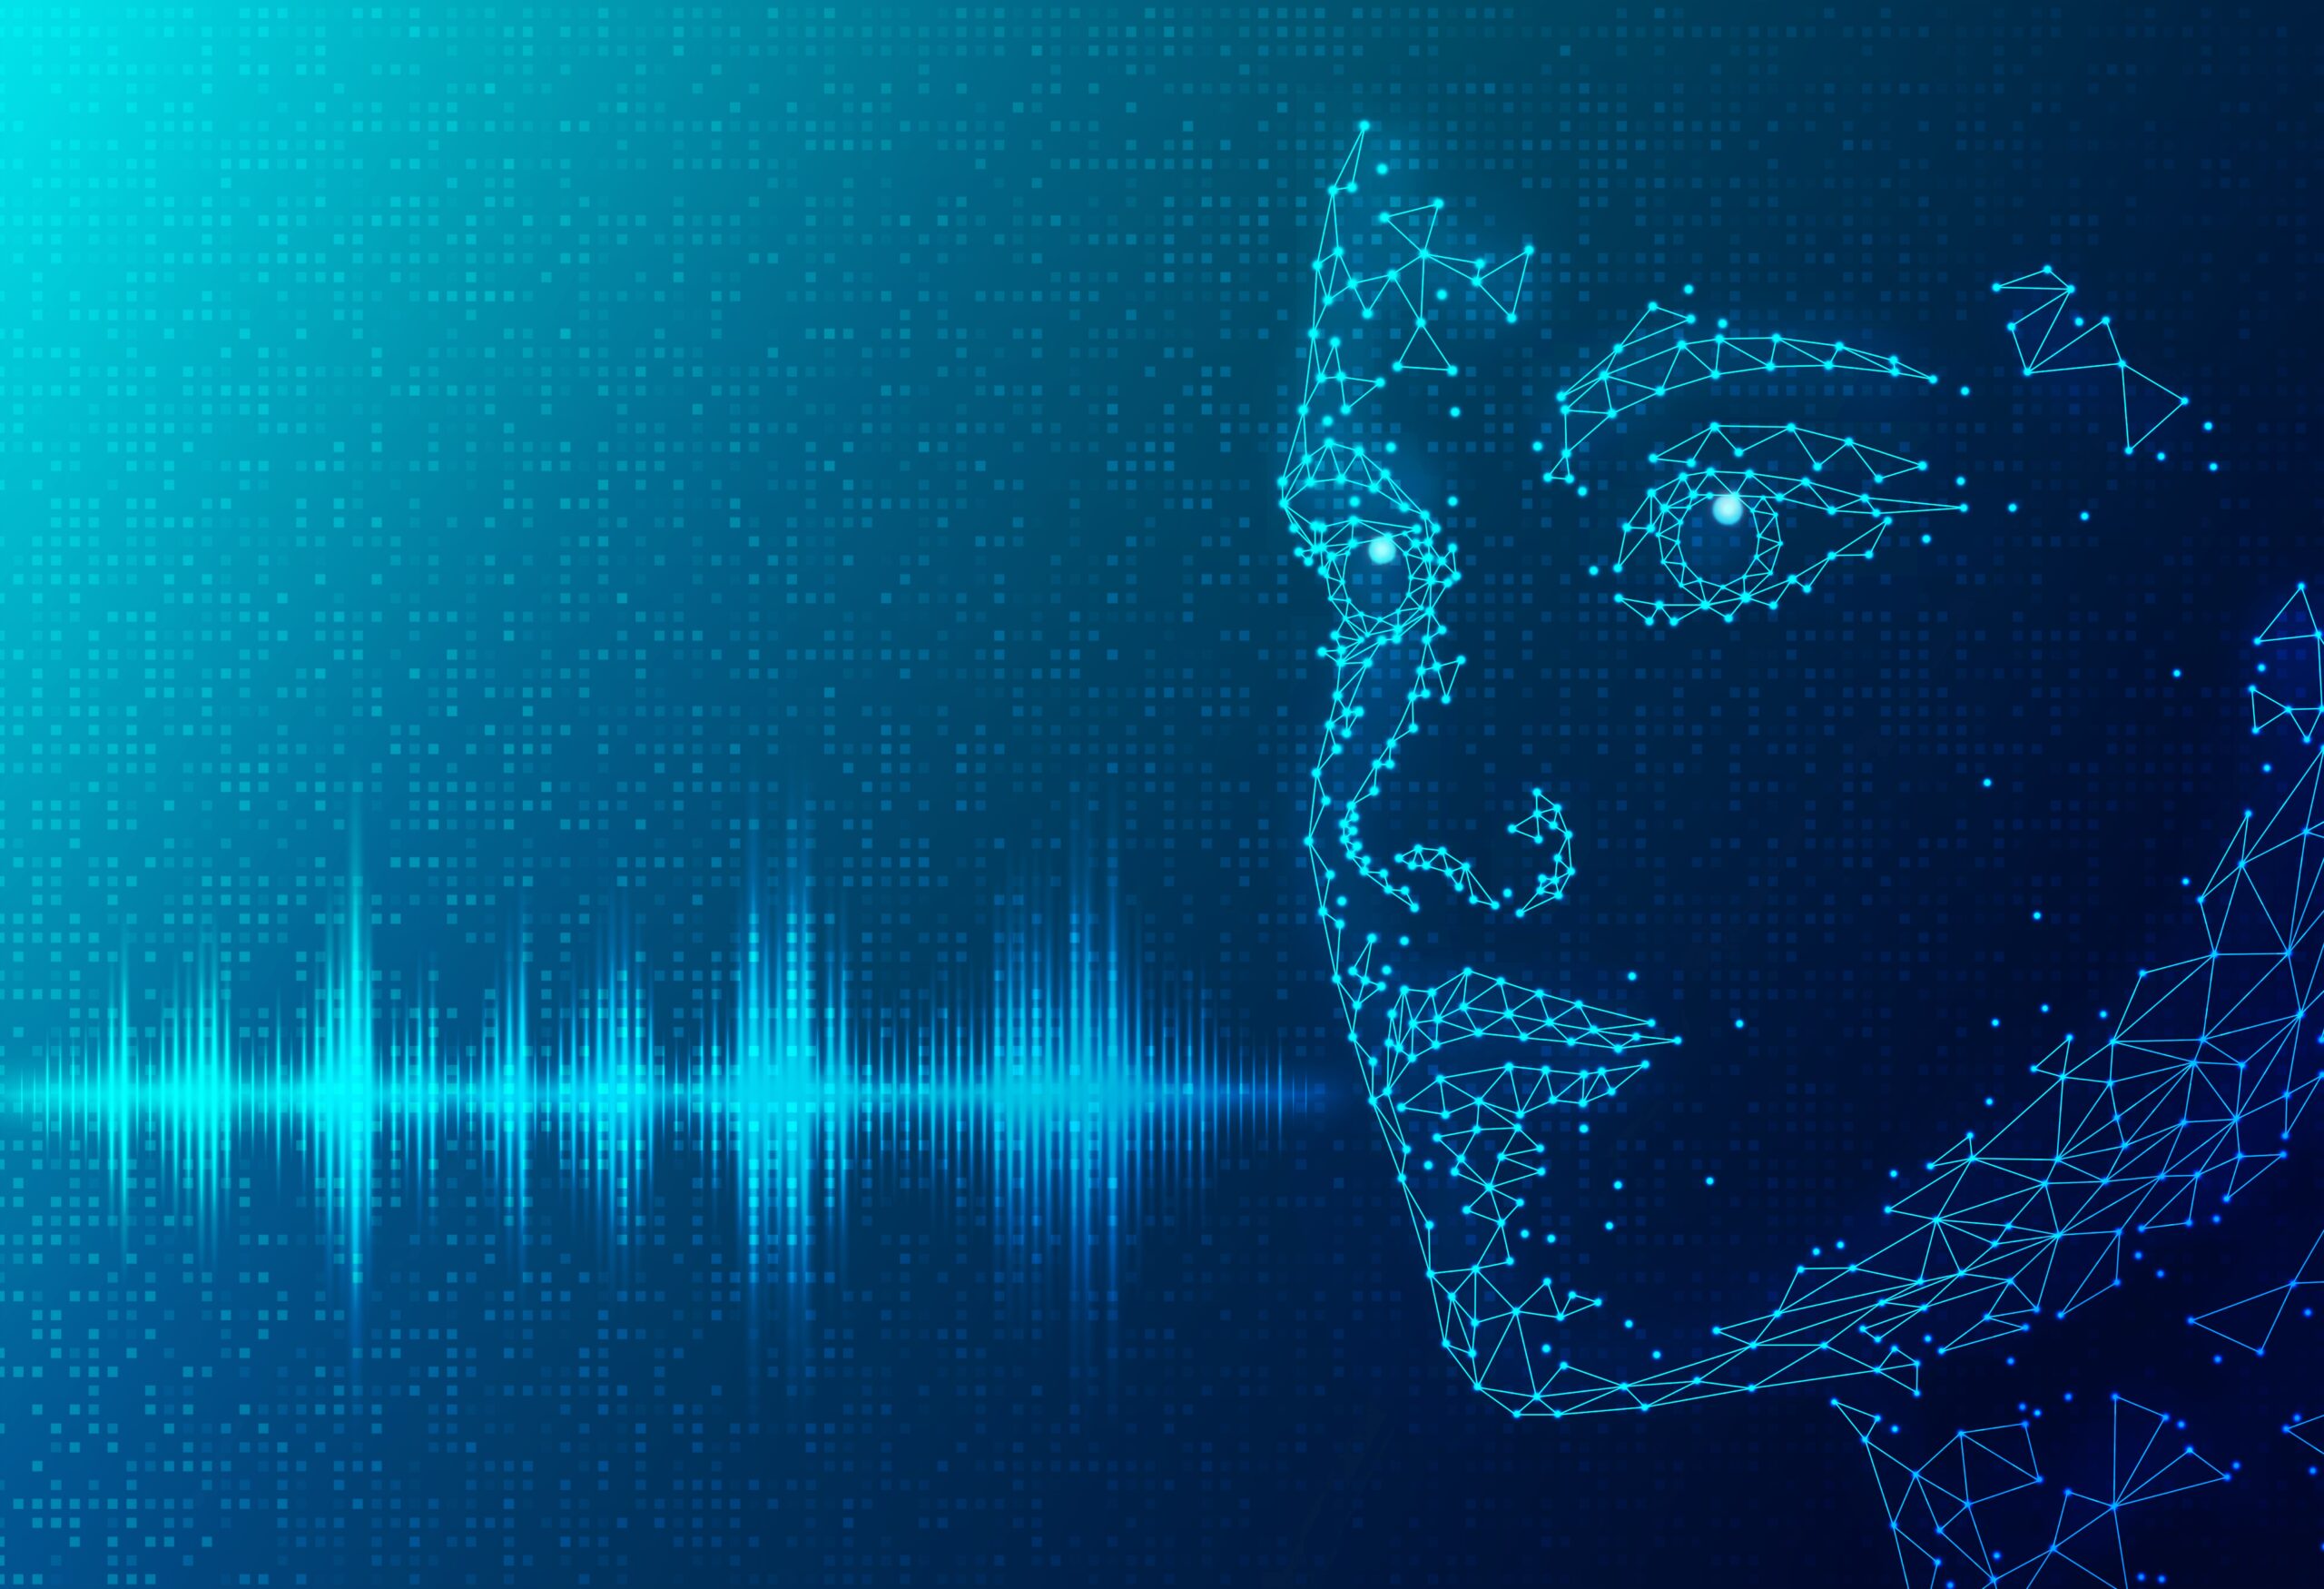 Personalizzazione dell'esperienza di apprendimento con AI Voice Over Generator - SmartData Collective